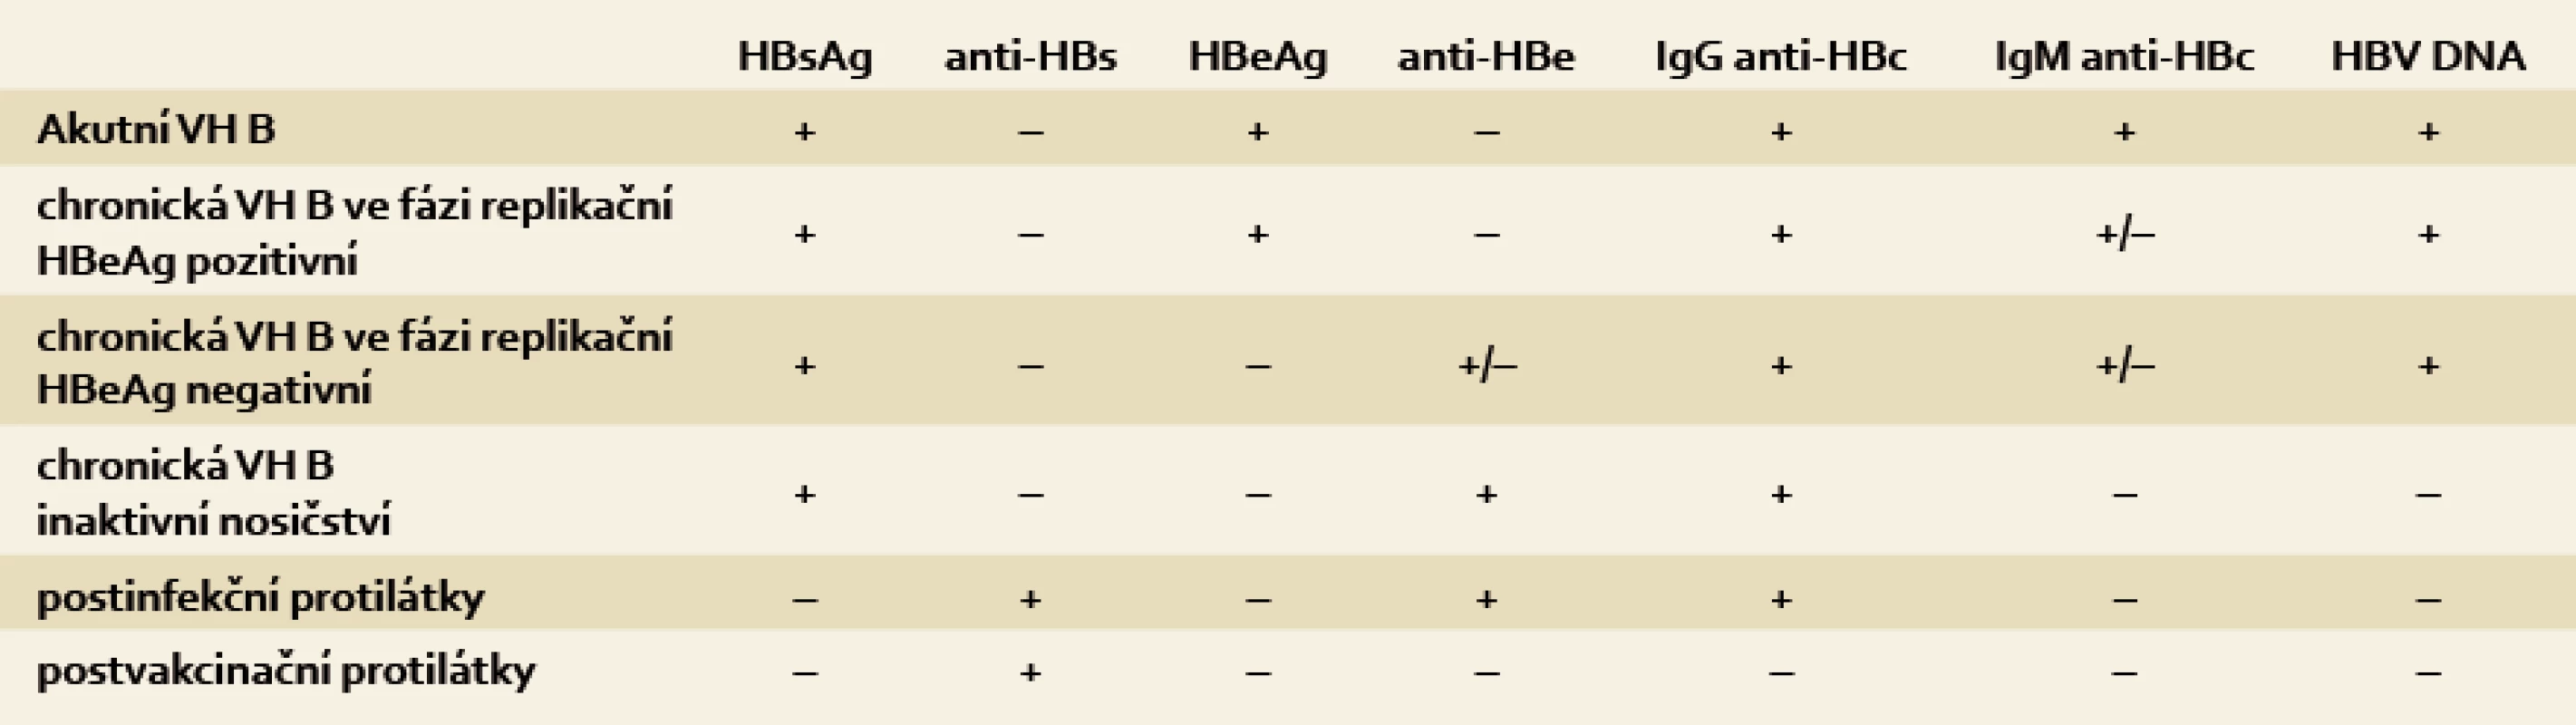 Typické sérologické a molekulárně genetické nálezy jednotlivých stadií přirozeného vývoje infekce HBV.
Tab. 1. A typical serological and molecular-genetic findings at each stage of the natural development of HBV infection.